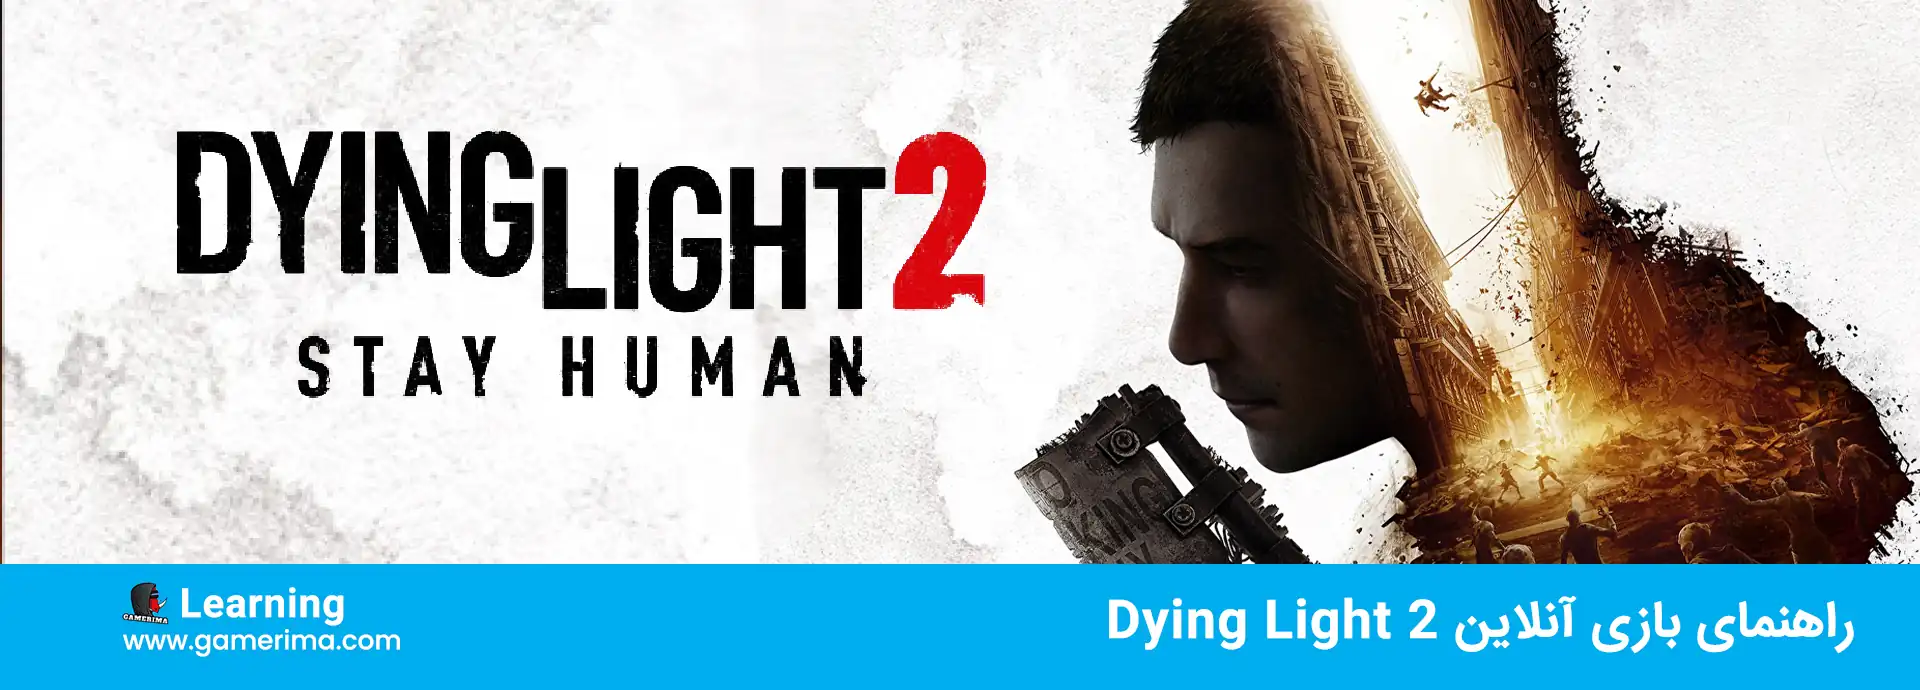 آموزش Dying Light 2؛ راهنمای بخش آنلاین بازی